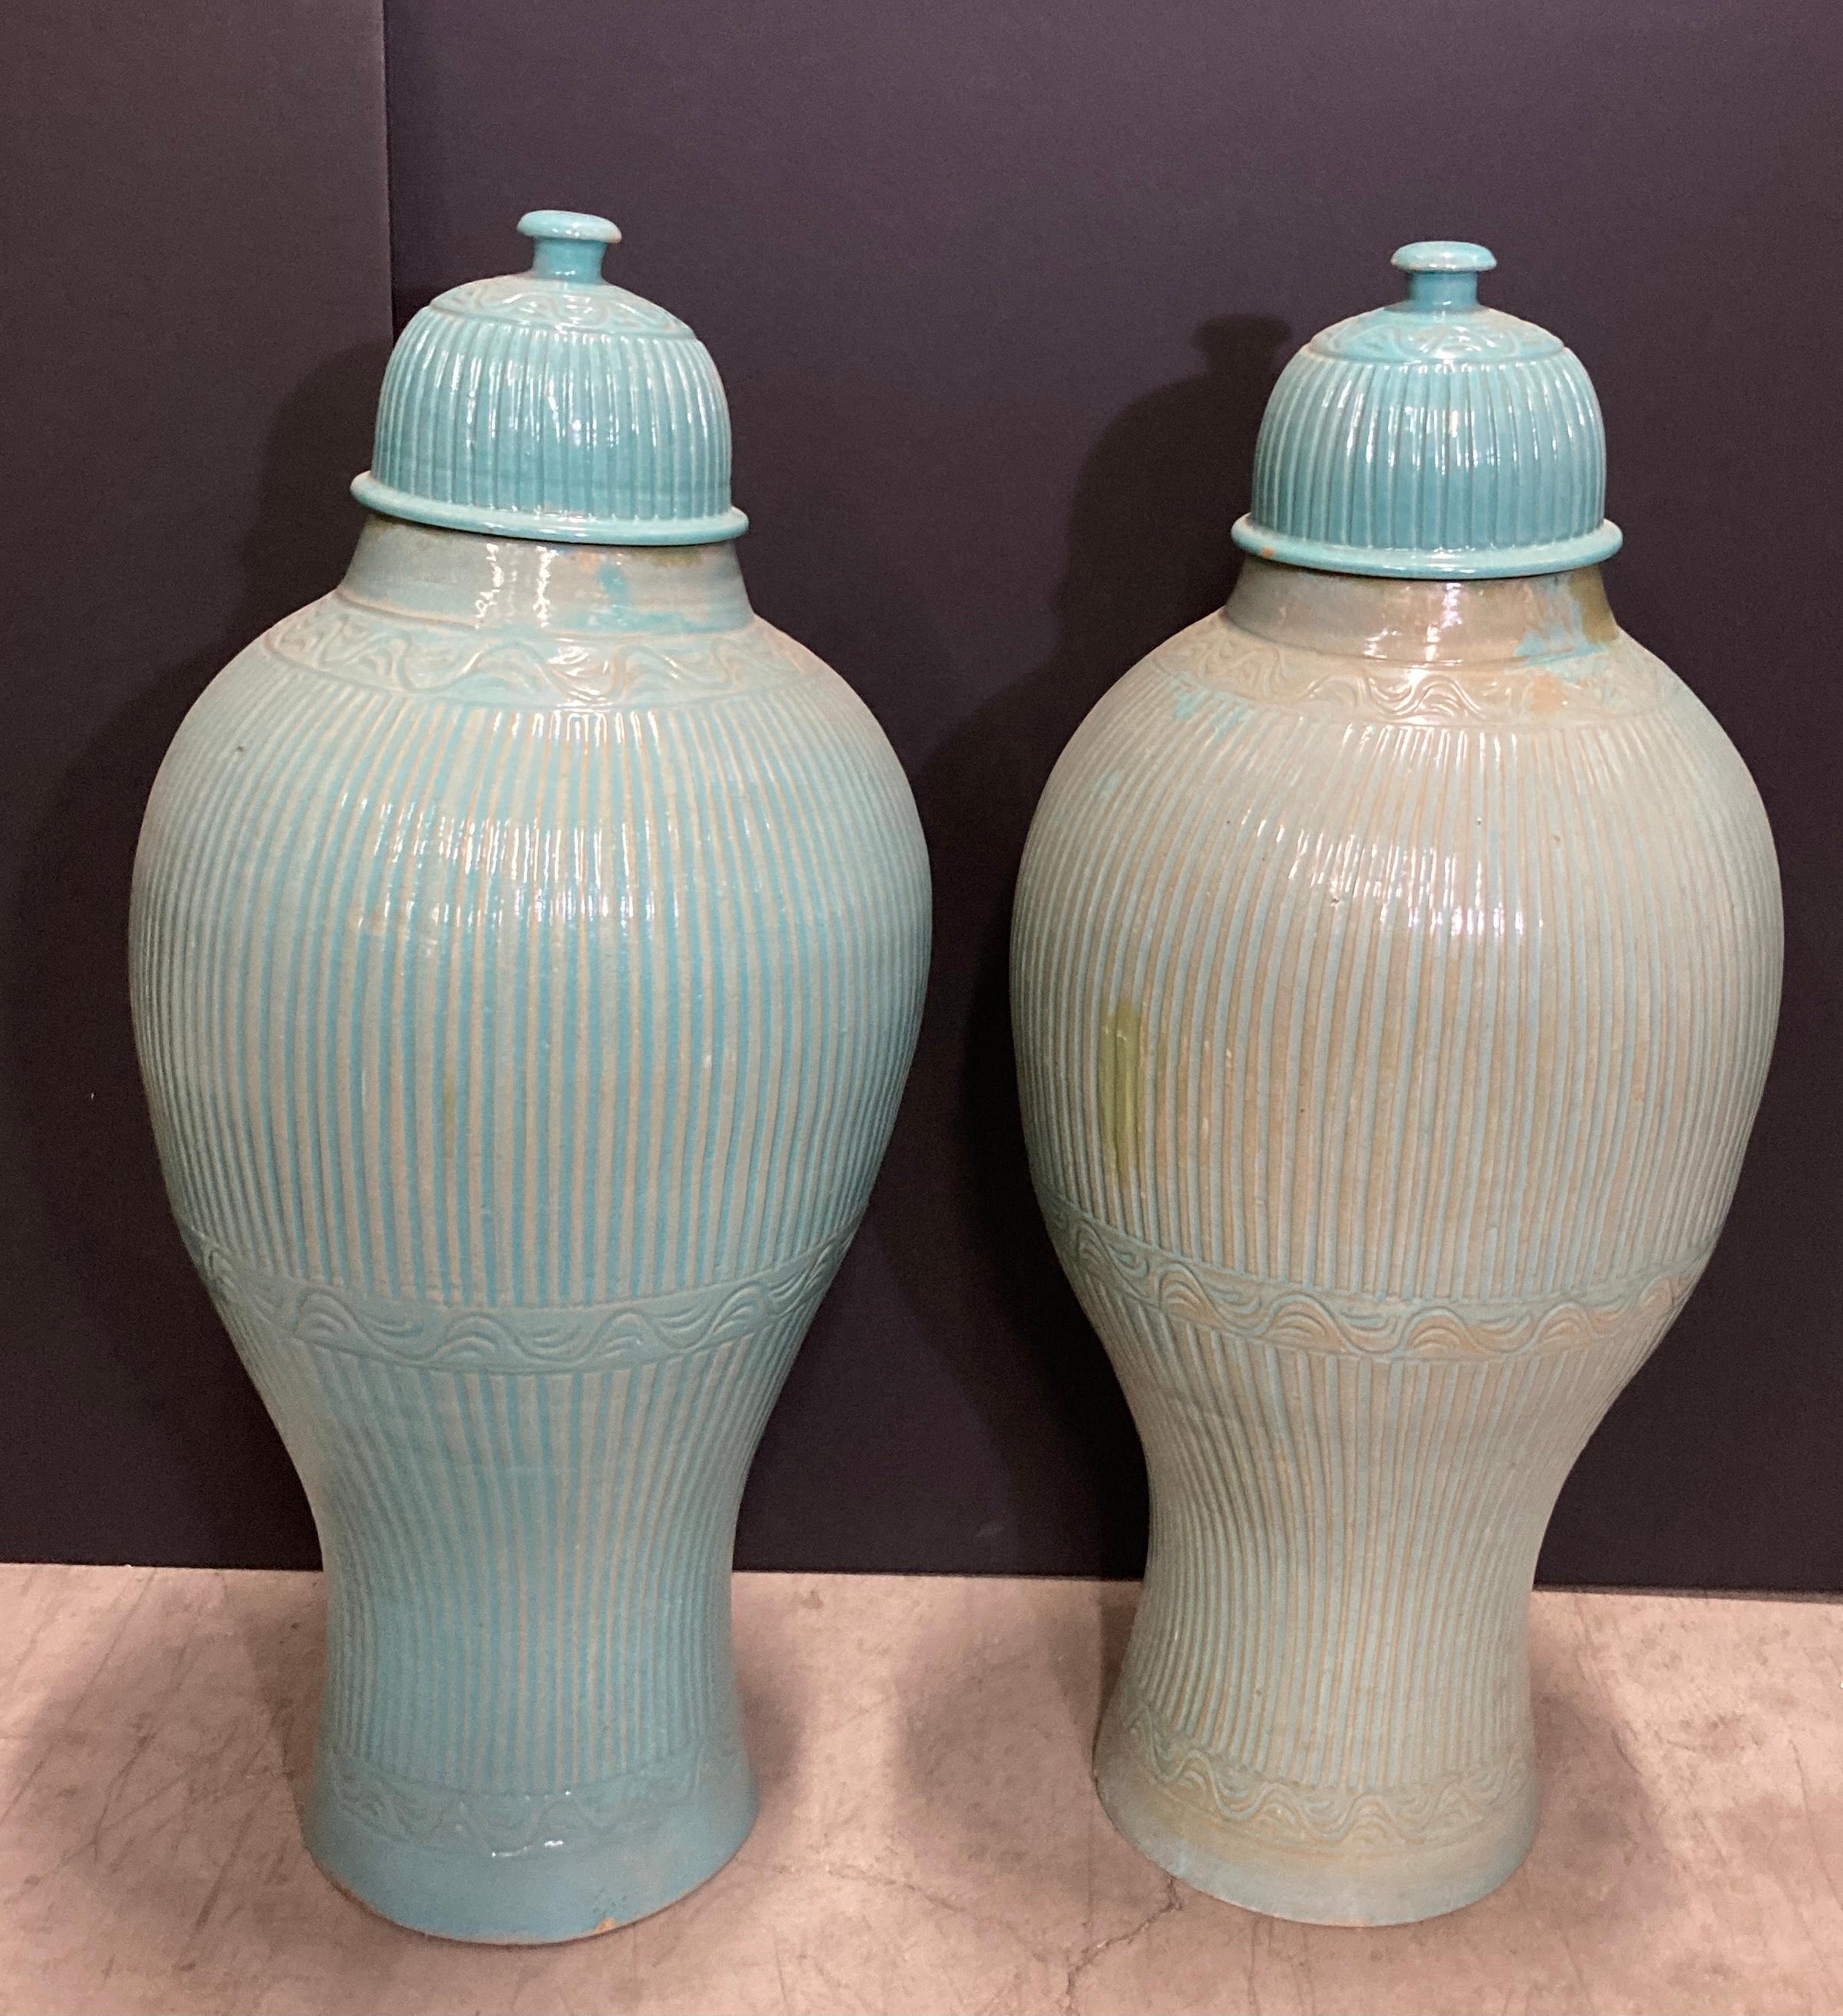 Paire de grandes urnes en céramique marocaine avec couvercle, fabriquées à la main et de couleur bleu aqua. Dimensions : large 3'.
Pots ou grands vases en céramique turquoise de style mauresque marocain fabriqués à la main.

